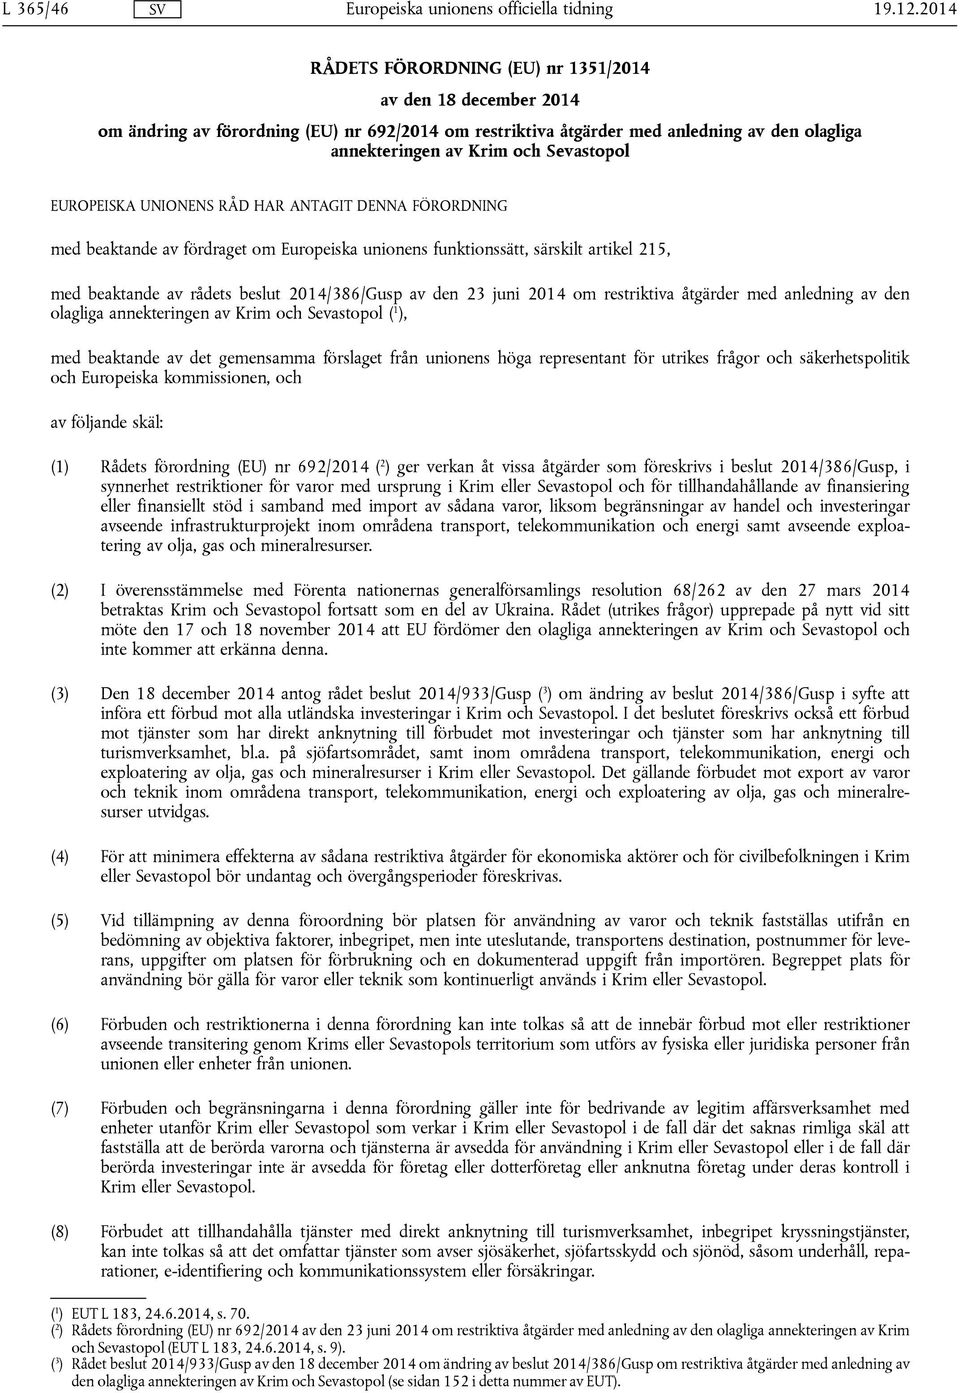 EUROPEISKA UNIONENS RÅD HAR ANTAGIT DENNA FÖRORDNING med beaktande av fördraget om Europeiska unionens funktionssätt, särskilt artikel 215, med beaktande av rådets beslut 2014/386/Gusp av den 23 juni